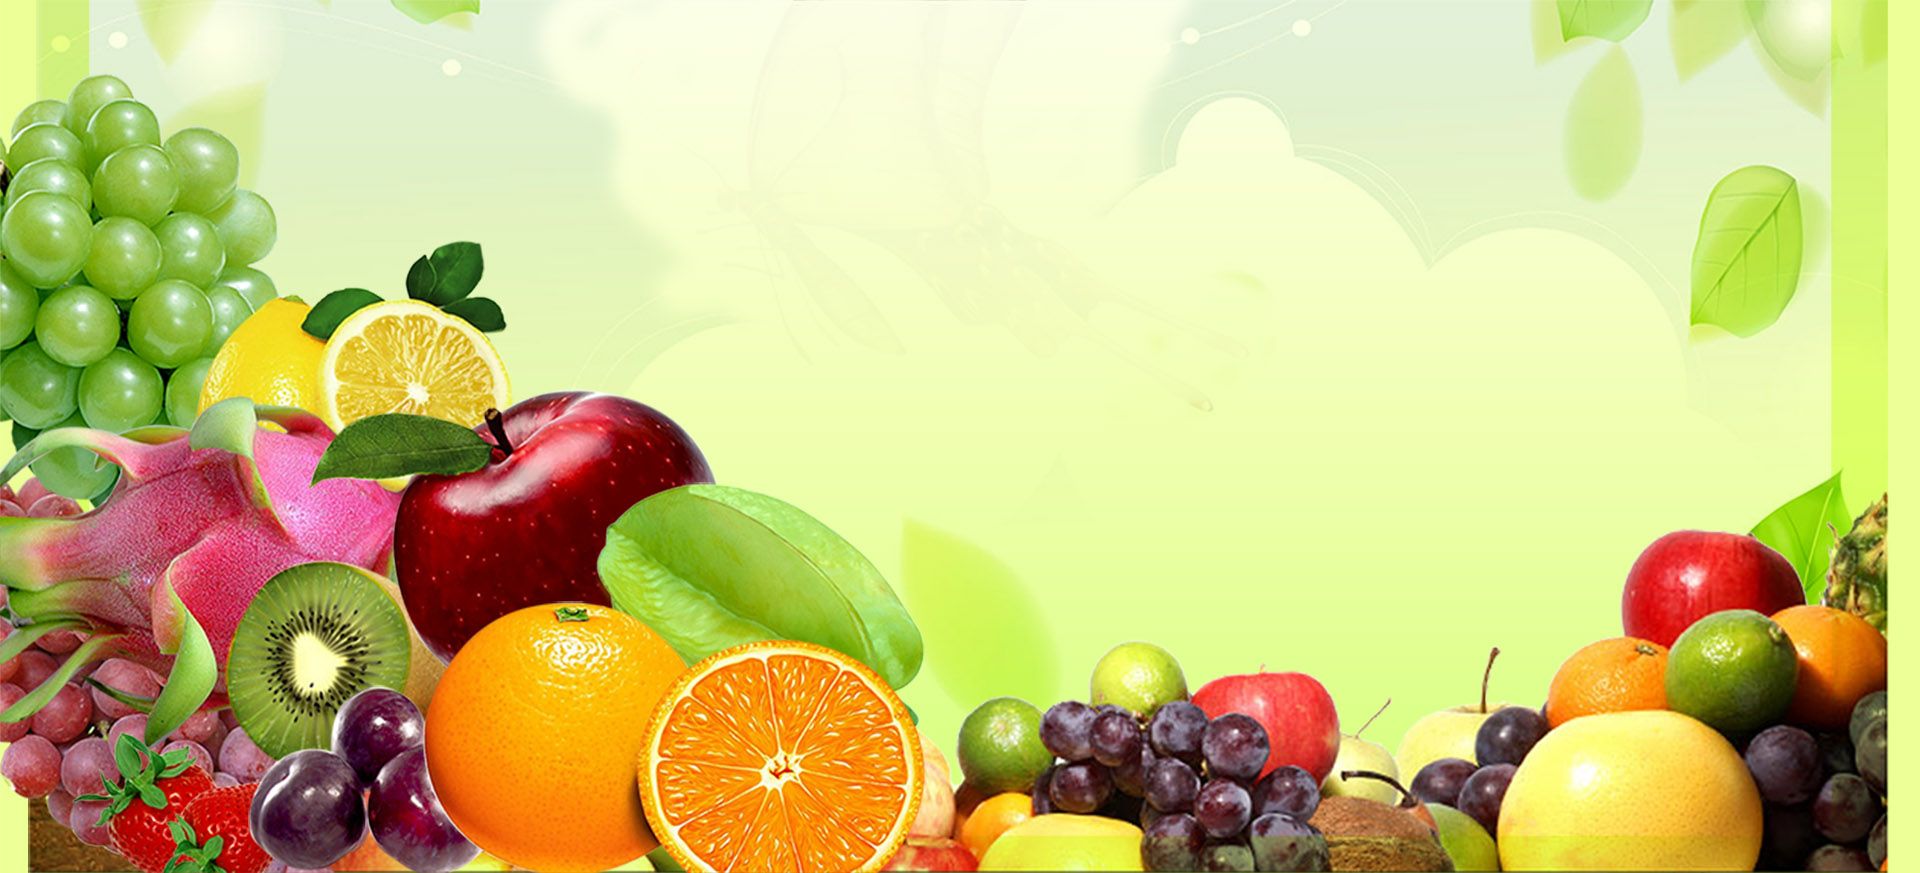 Background về trái cây